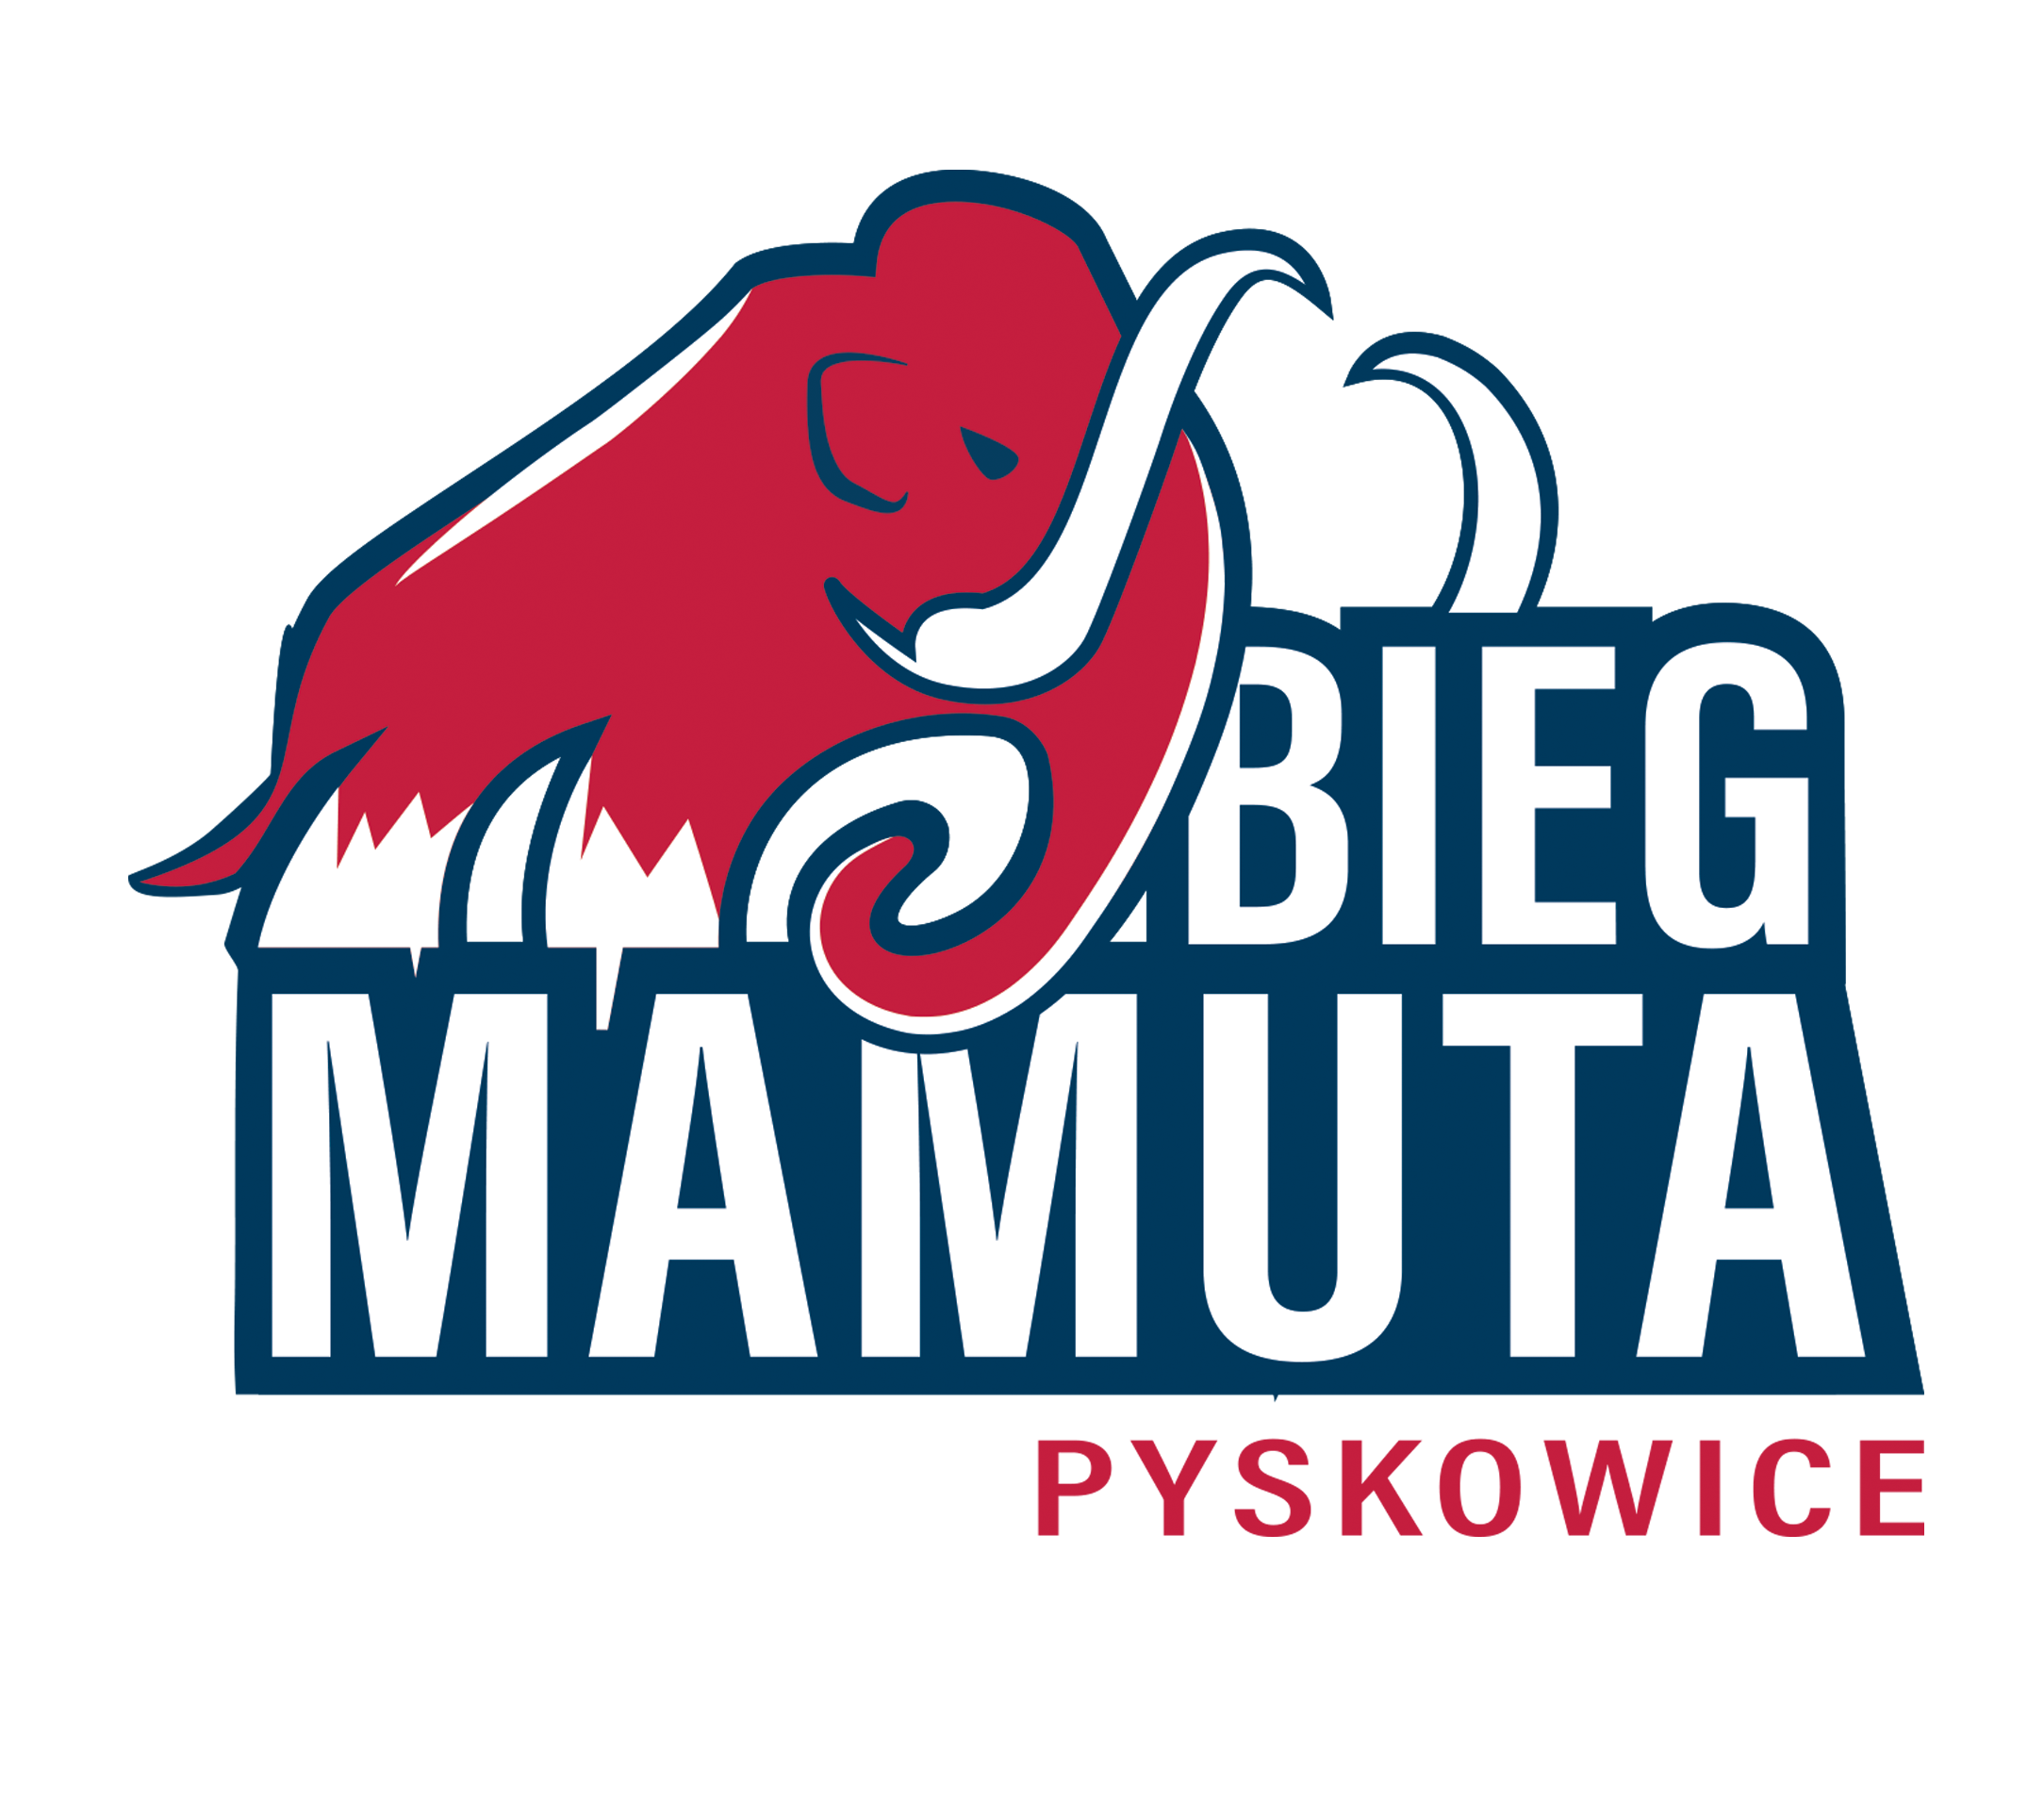 Logotyp mamut